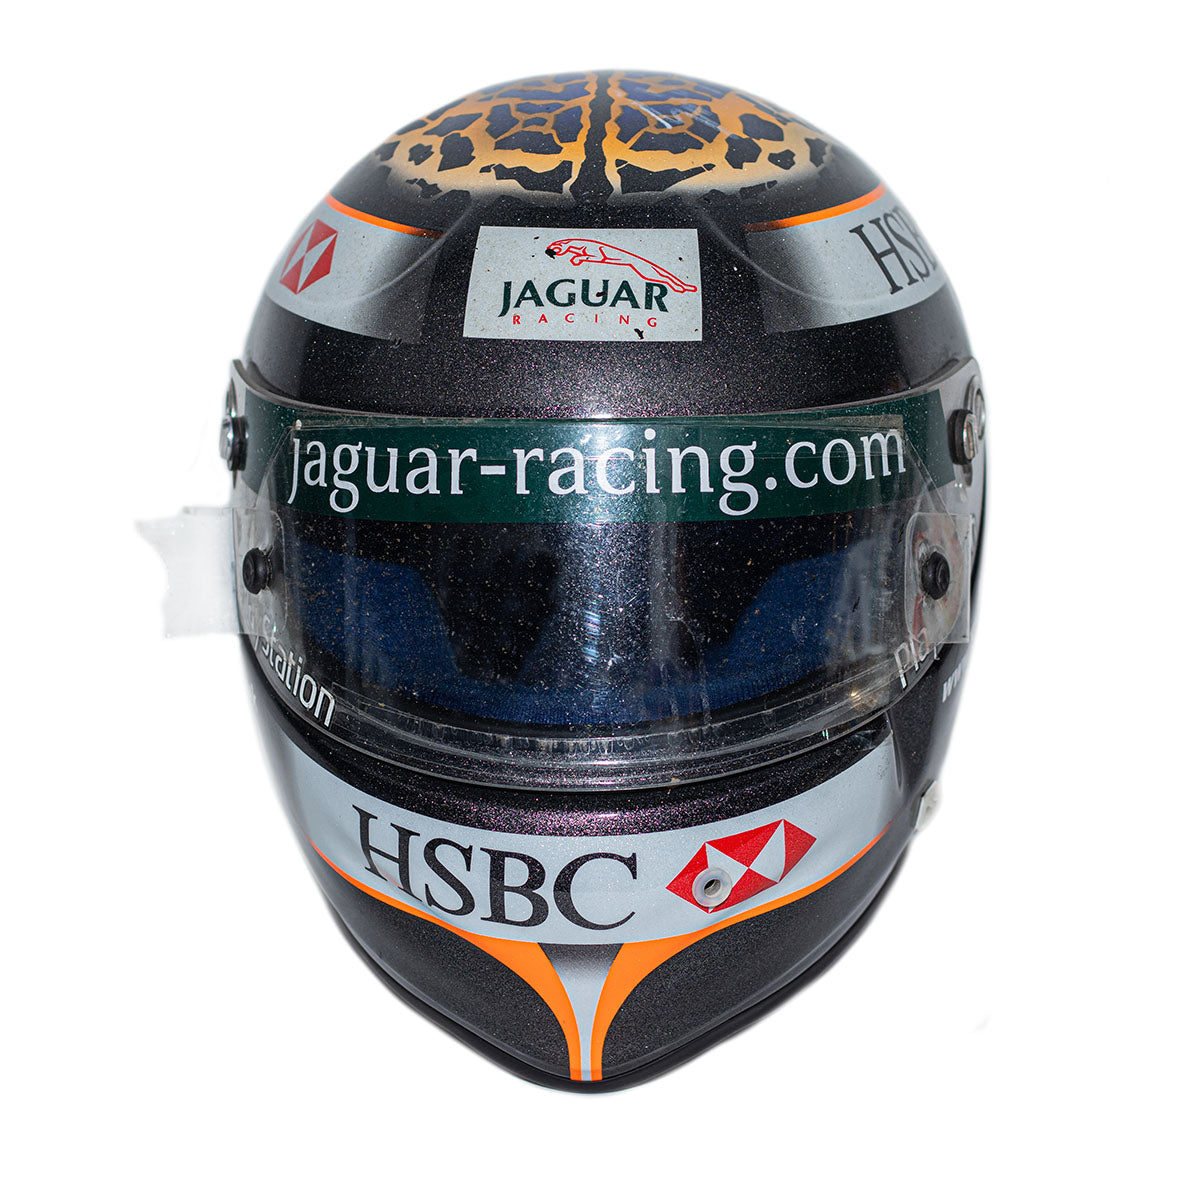 2001 Eddie Irvine Signed United States G.P. Jaguar F1 Race Used Helmet